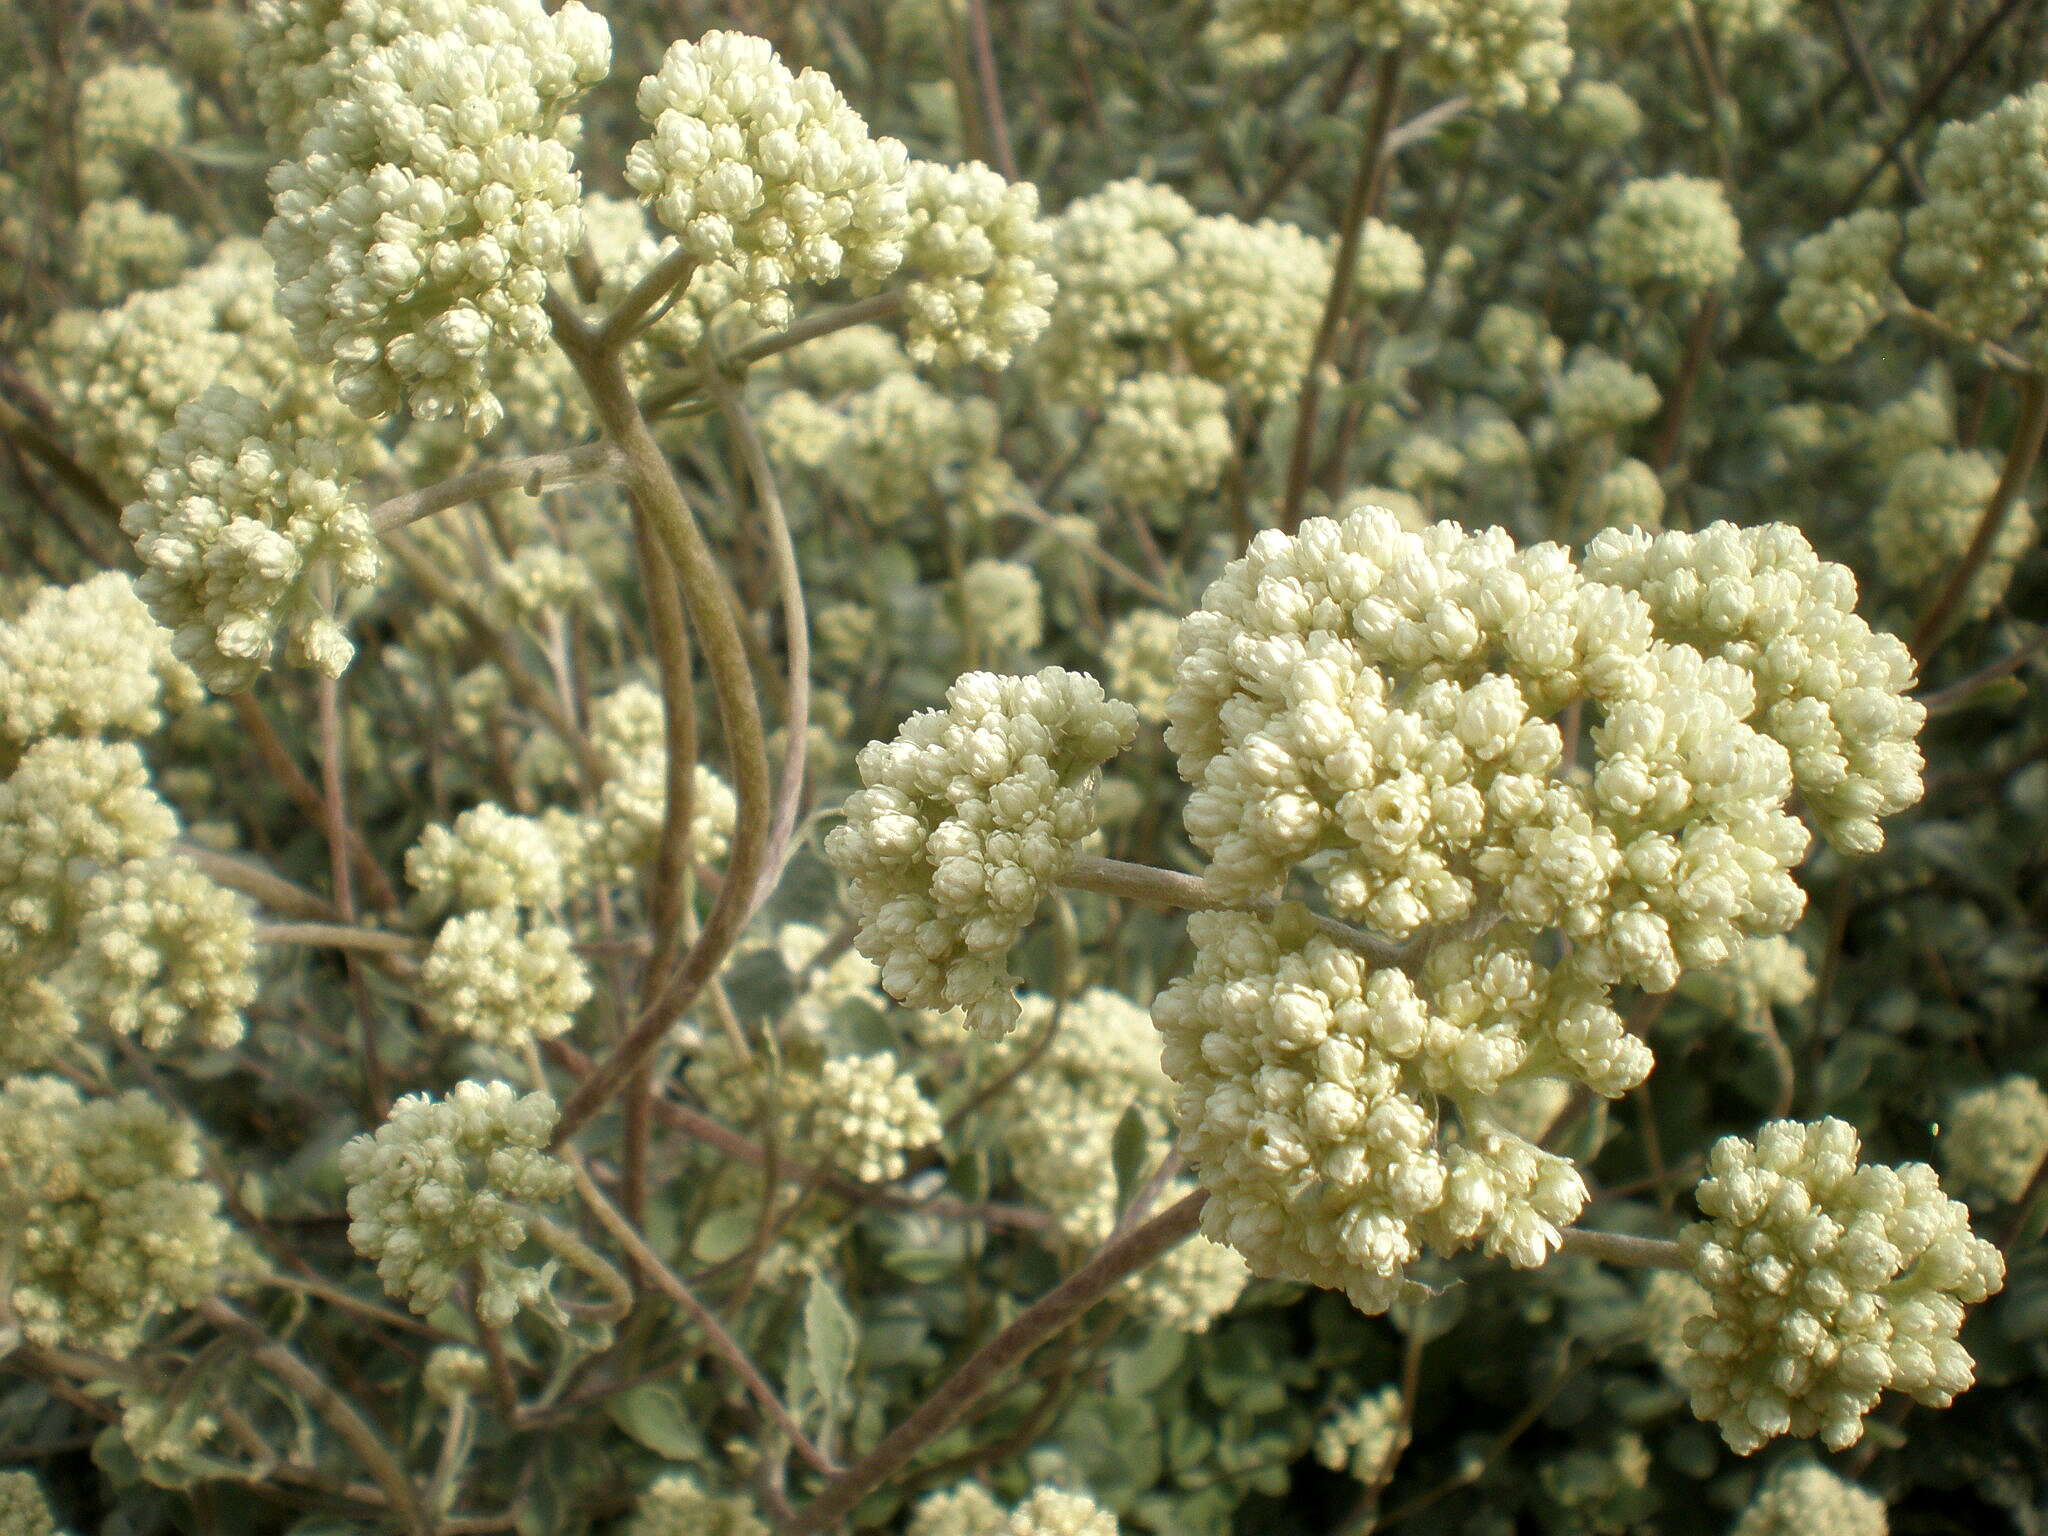 Image of licorice-plant